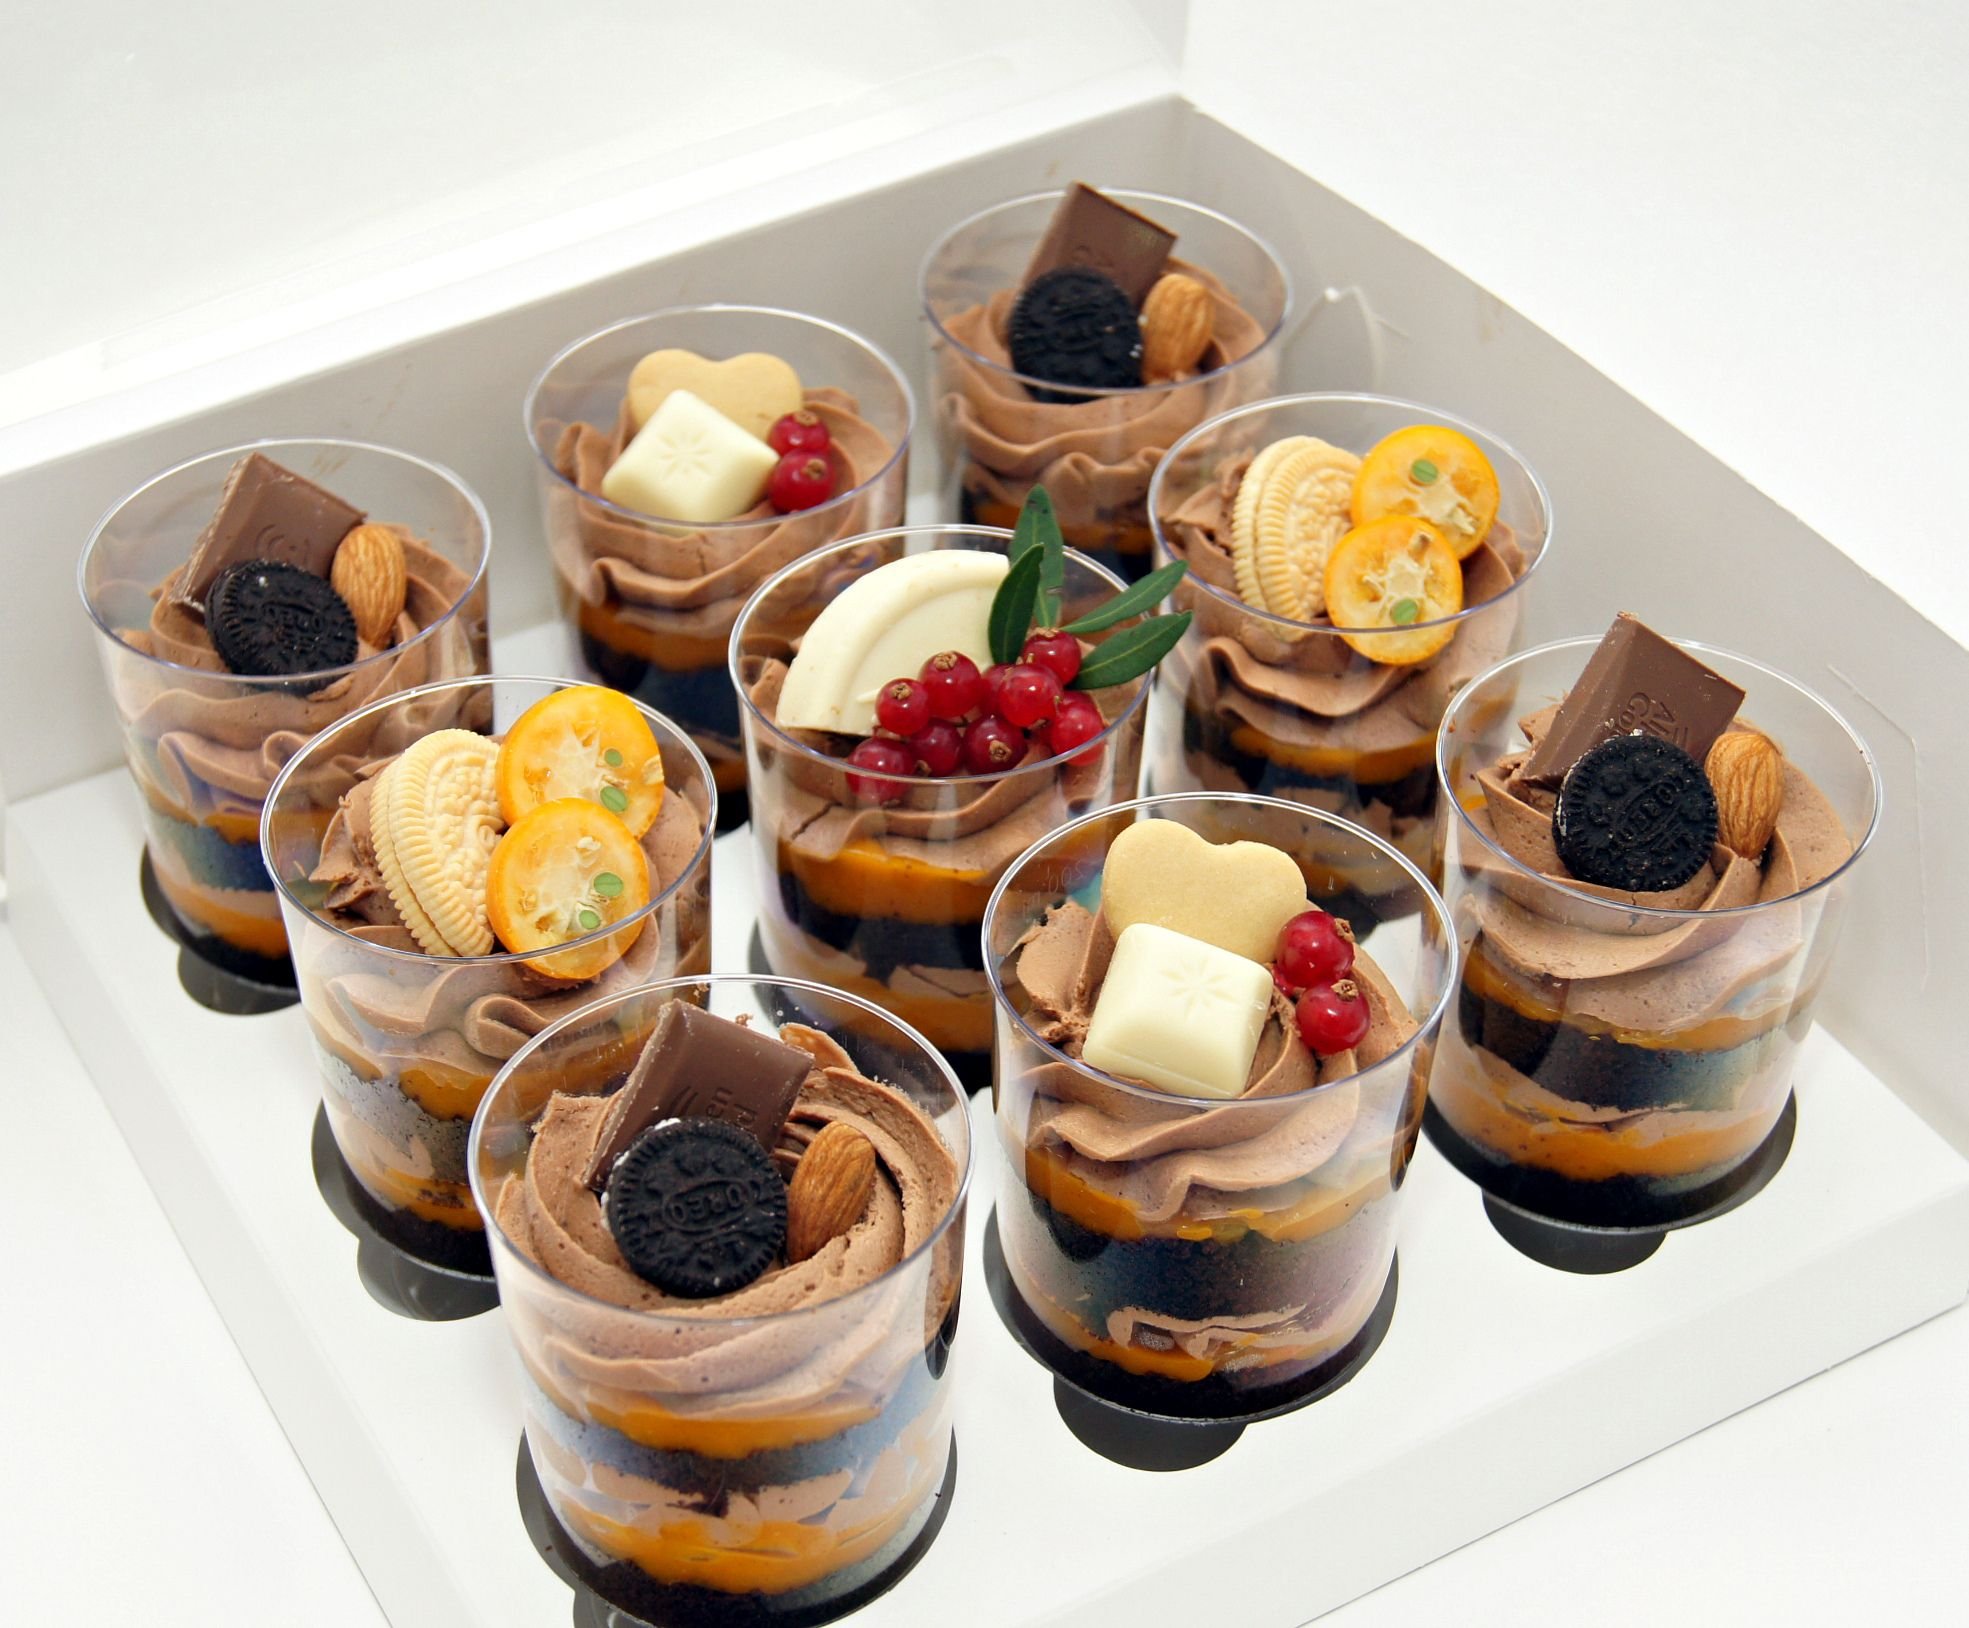 Десерты в стаканчиках рецепты с фото простые и вкусные в домашних условиях пошагово